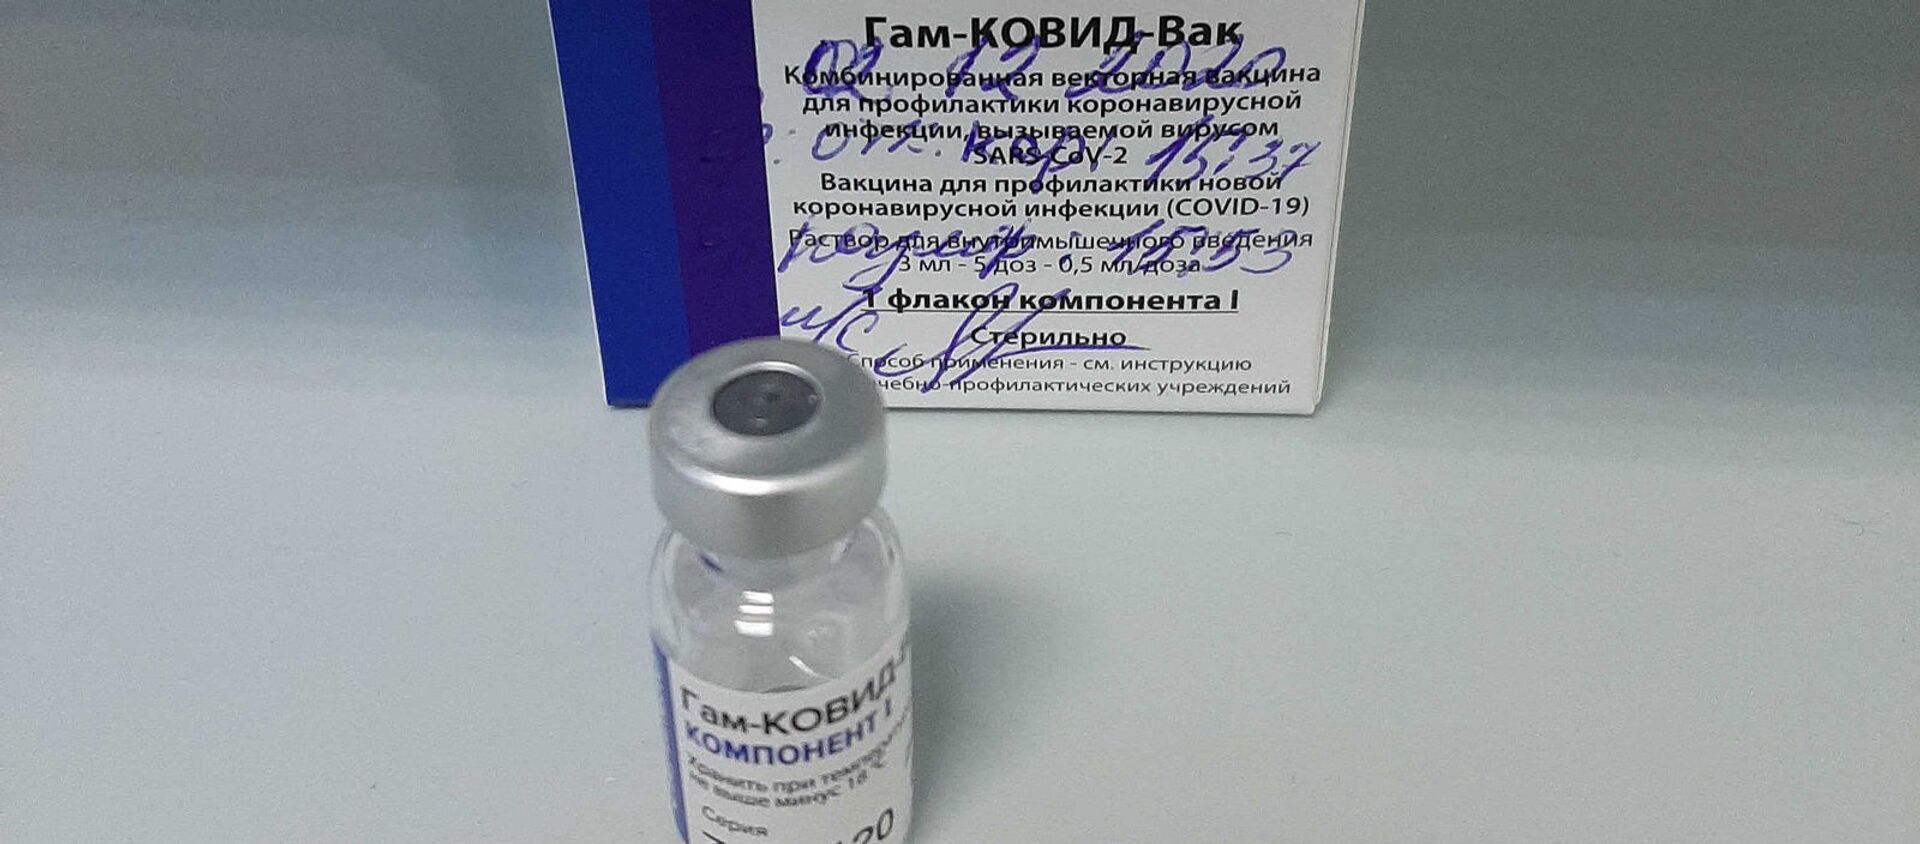 اولین واکسن روسی علیه ویروس کرونا به نام اسپوتنیک وی - اسپوتنیک افغانستان  , 1920, 29.03.2021